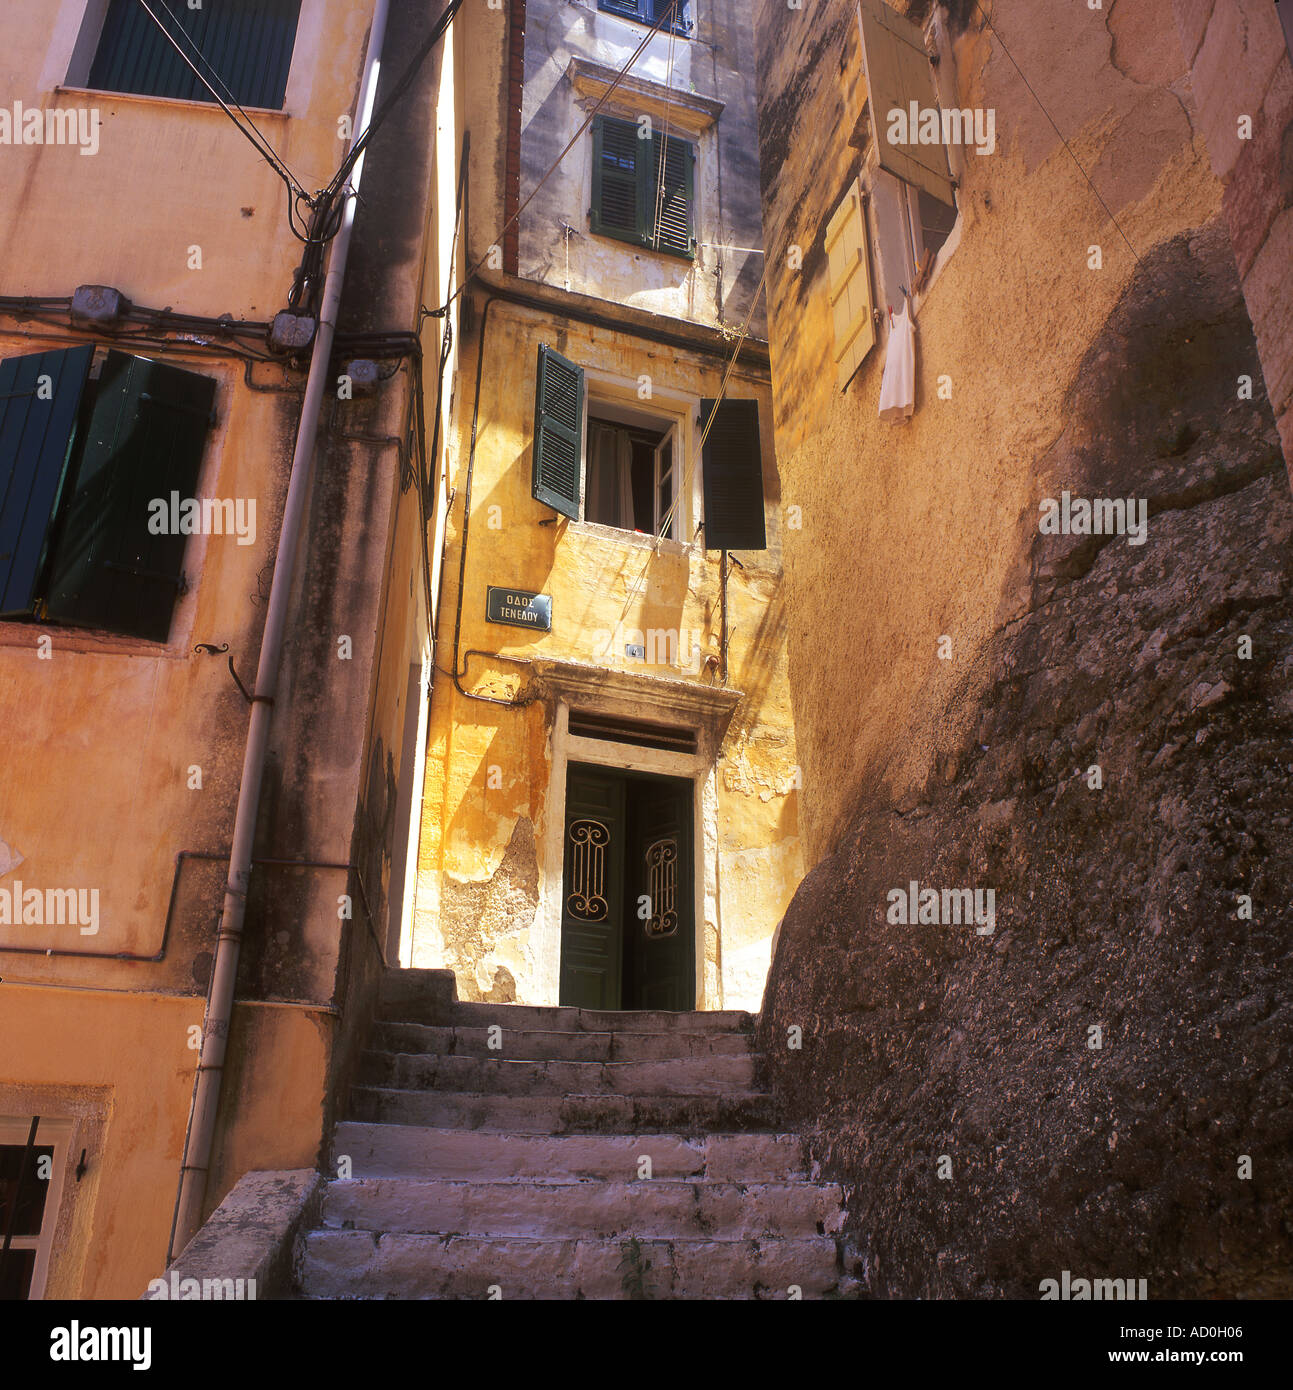 Typische griechische Backstreet im Cambiello oder Altstadt von Korfu-Stadt Korfu Griechenland Stockfoto